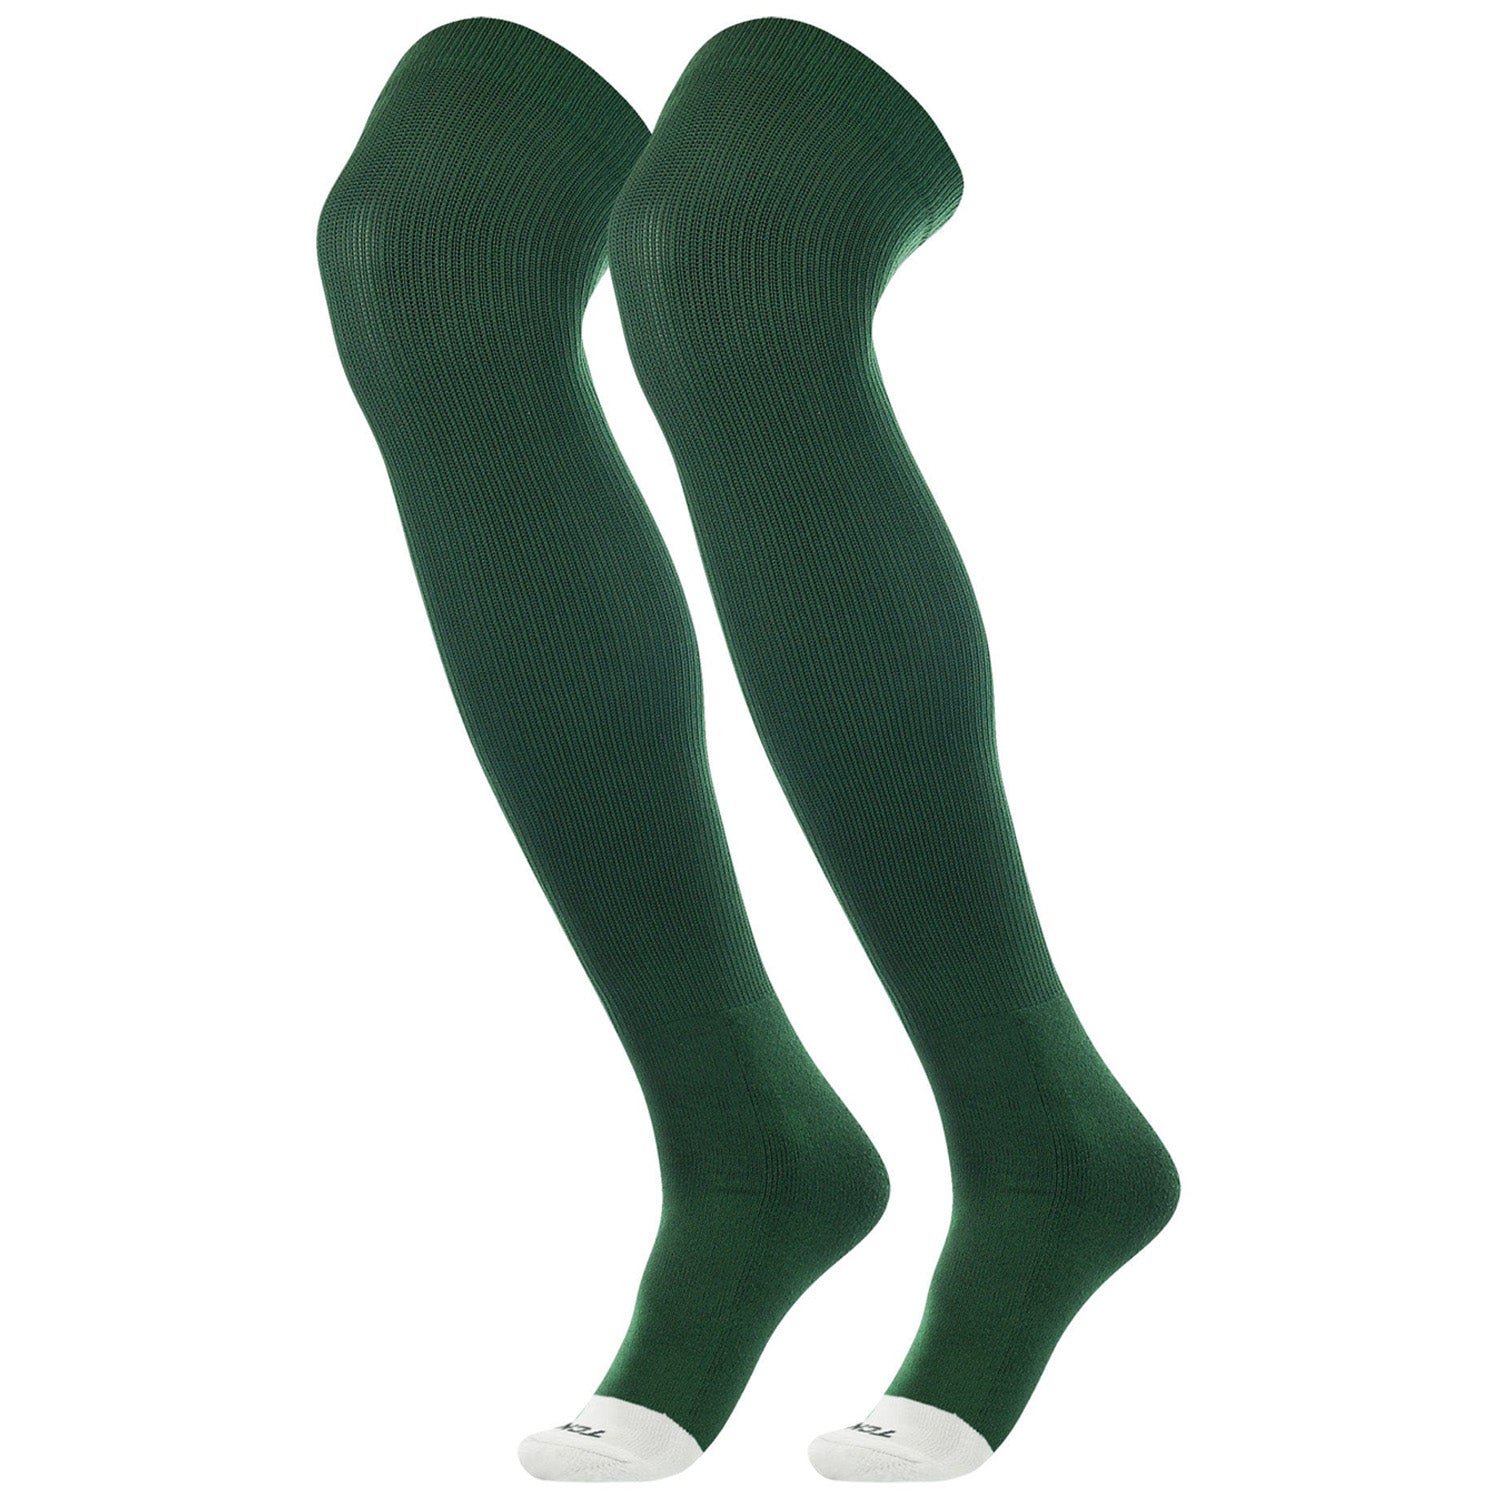 Green Soccer Socks